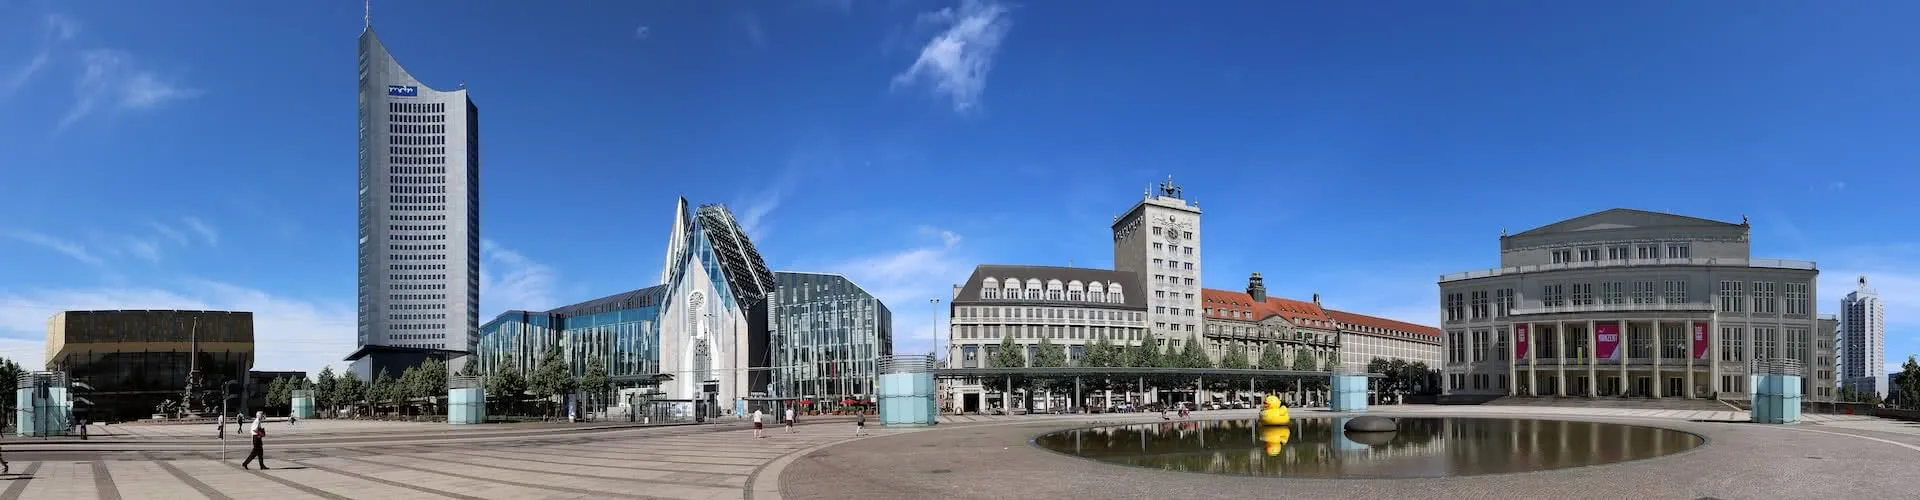 Leipzig panorama image